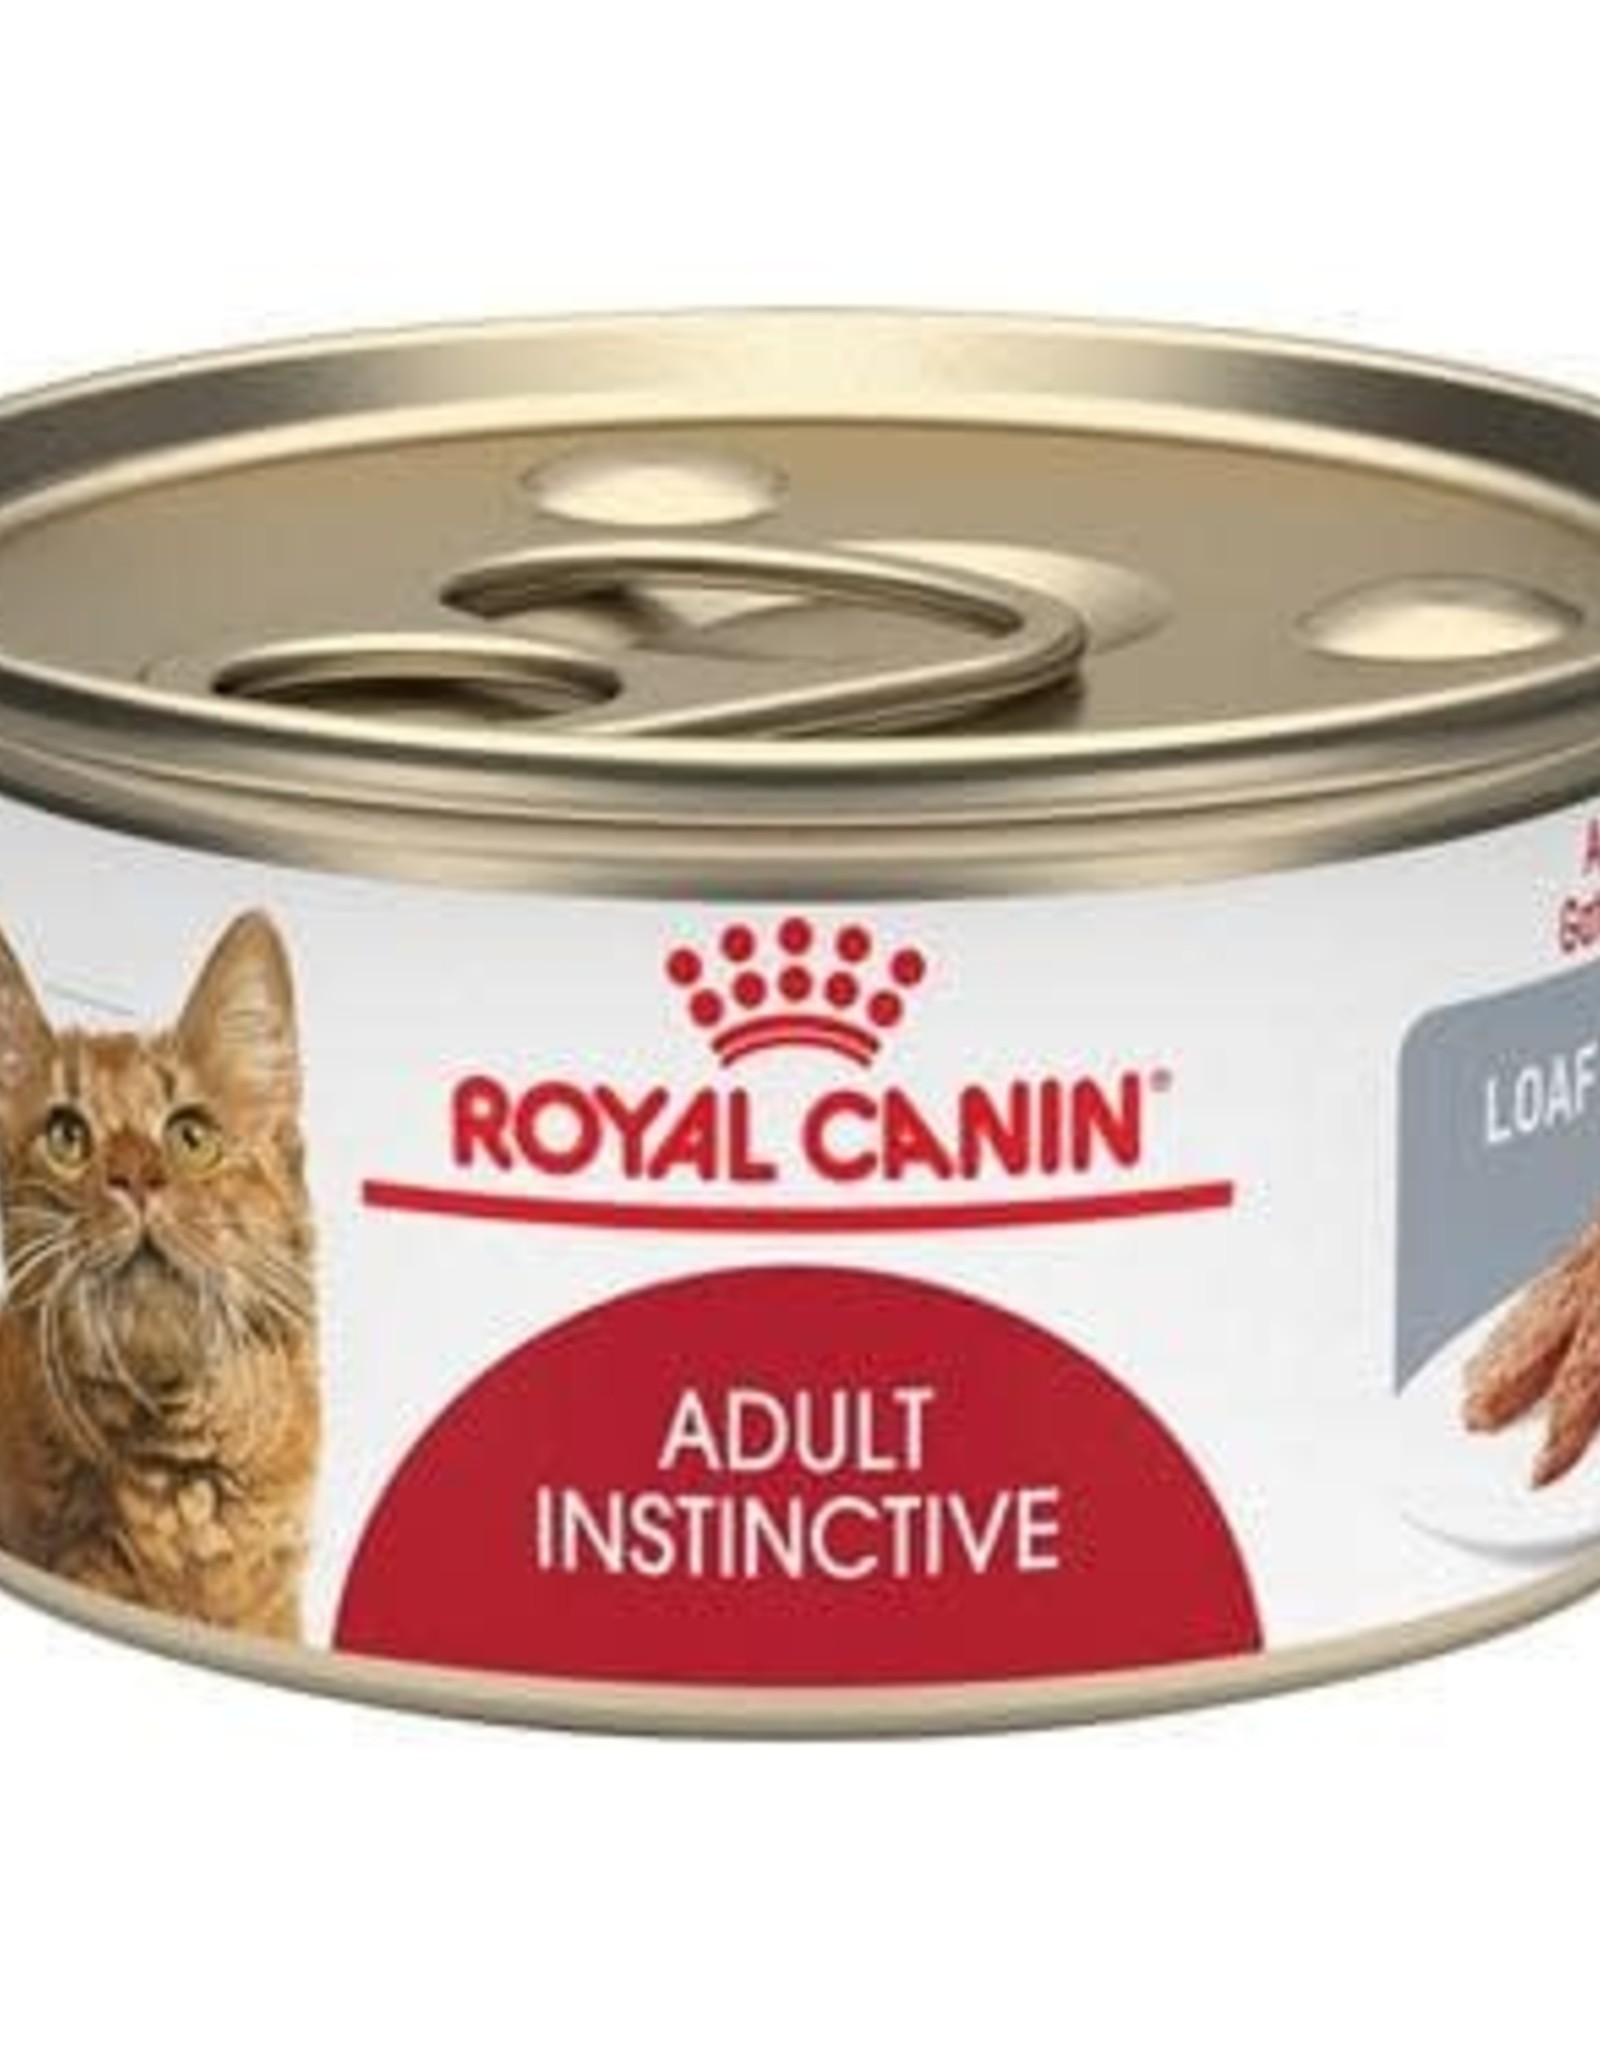 Royal Canin Royal Canin Adult Instinctive (loaf) 3oz Cans